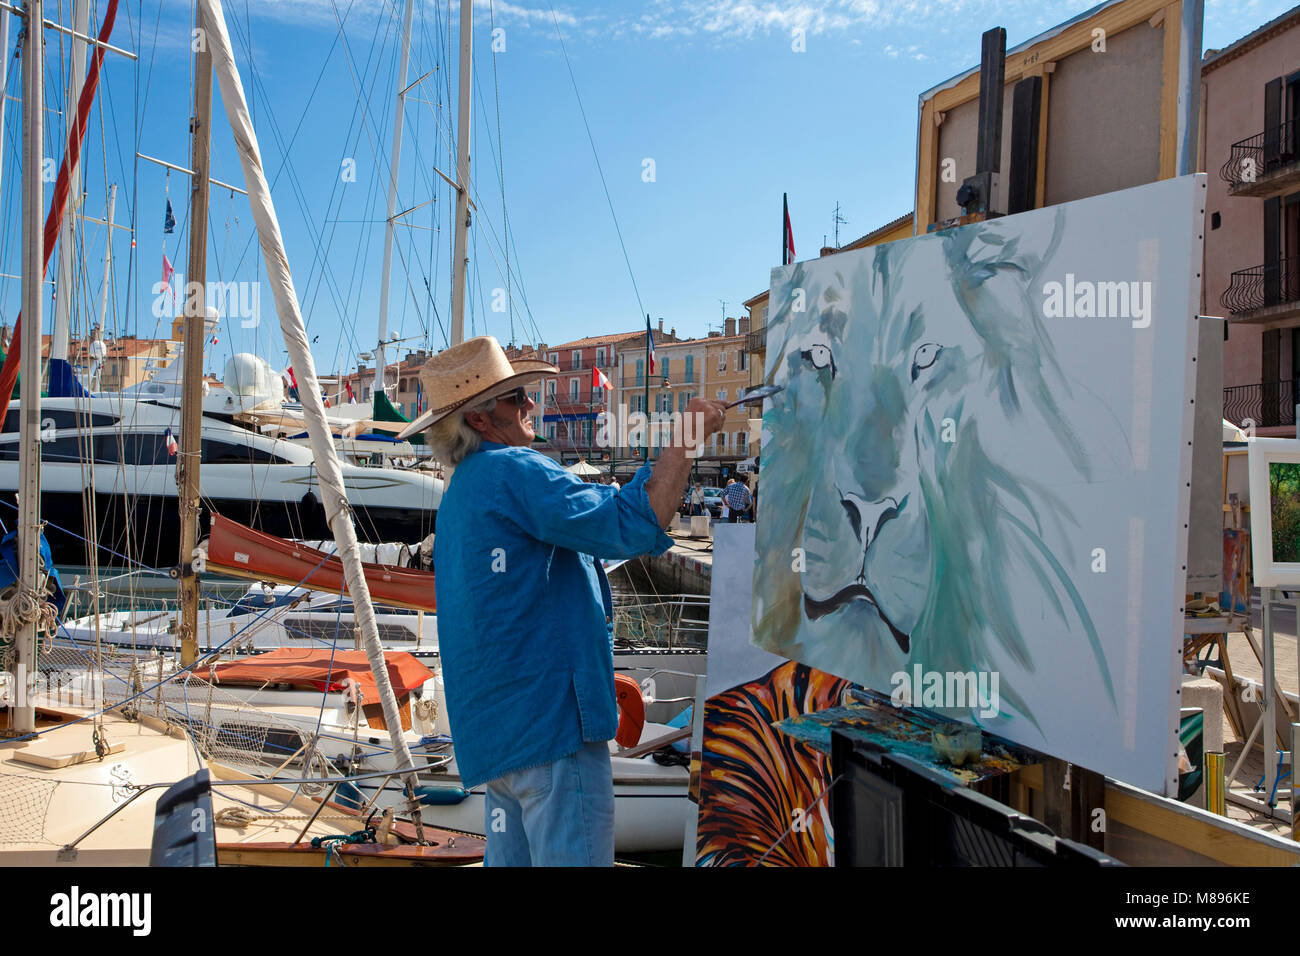 Maler bei der Arbeit, ein Spaziergang Promenade am Hafen von Saint Tropez, Côte d'Azur, Südfrankreich, Cote d'Azur, Frankreich, Europa Stockfoto